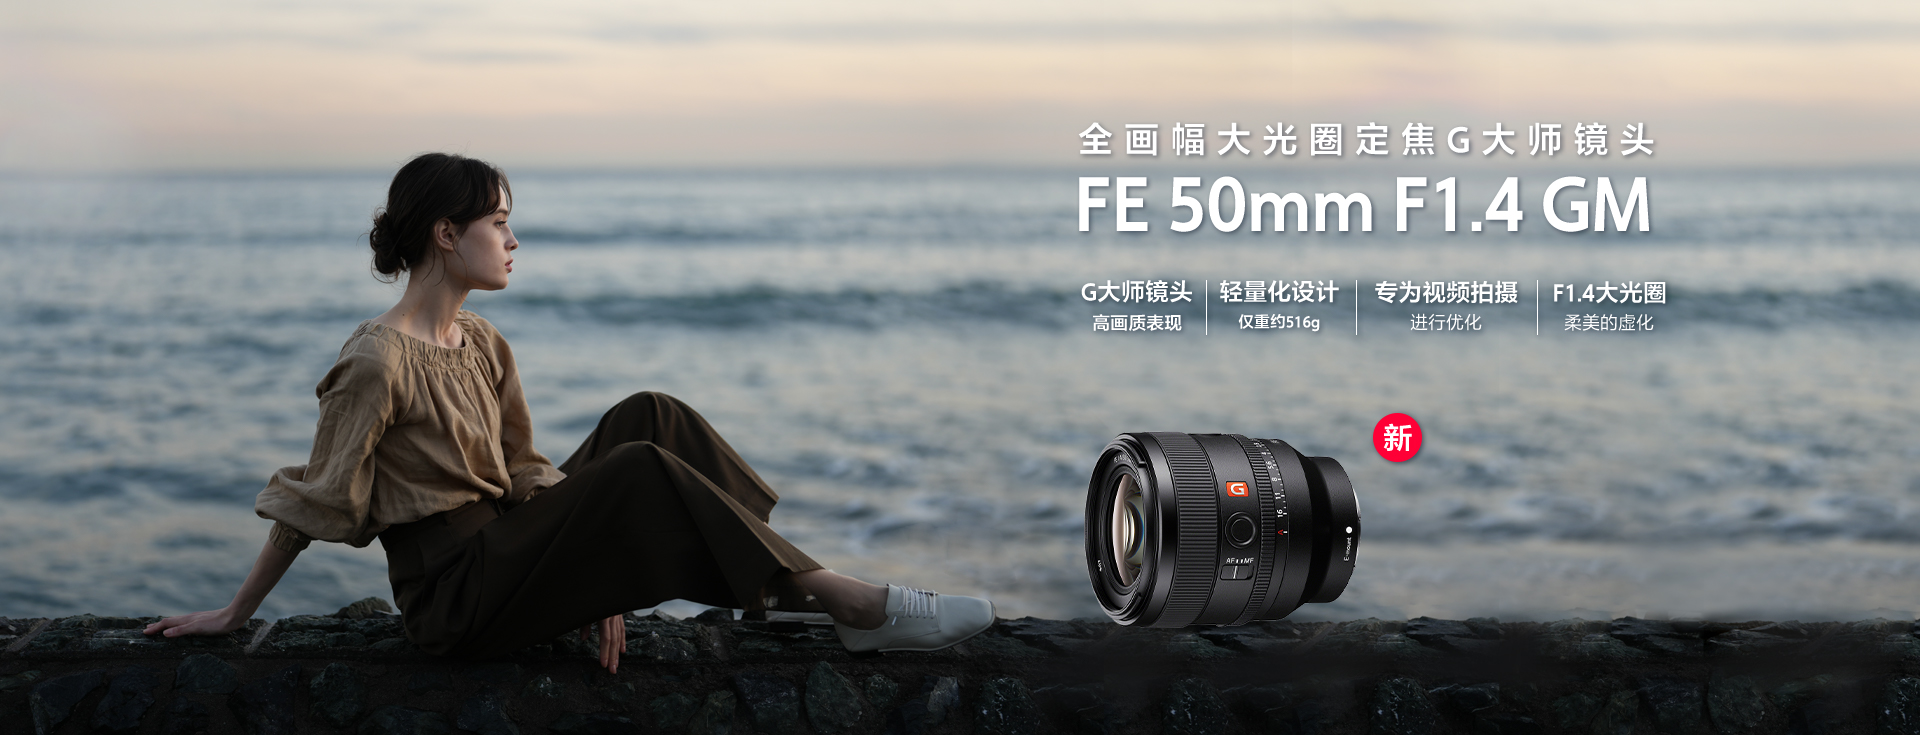 FE 50mm F1.4 GM 全画幅大光圈定焦G大师镜头&主要卖点&产品图和样照展示